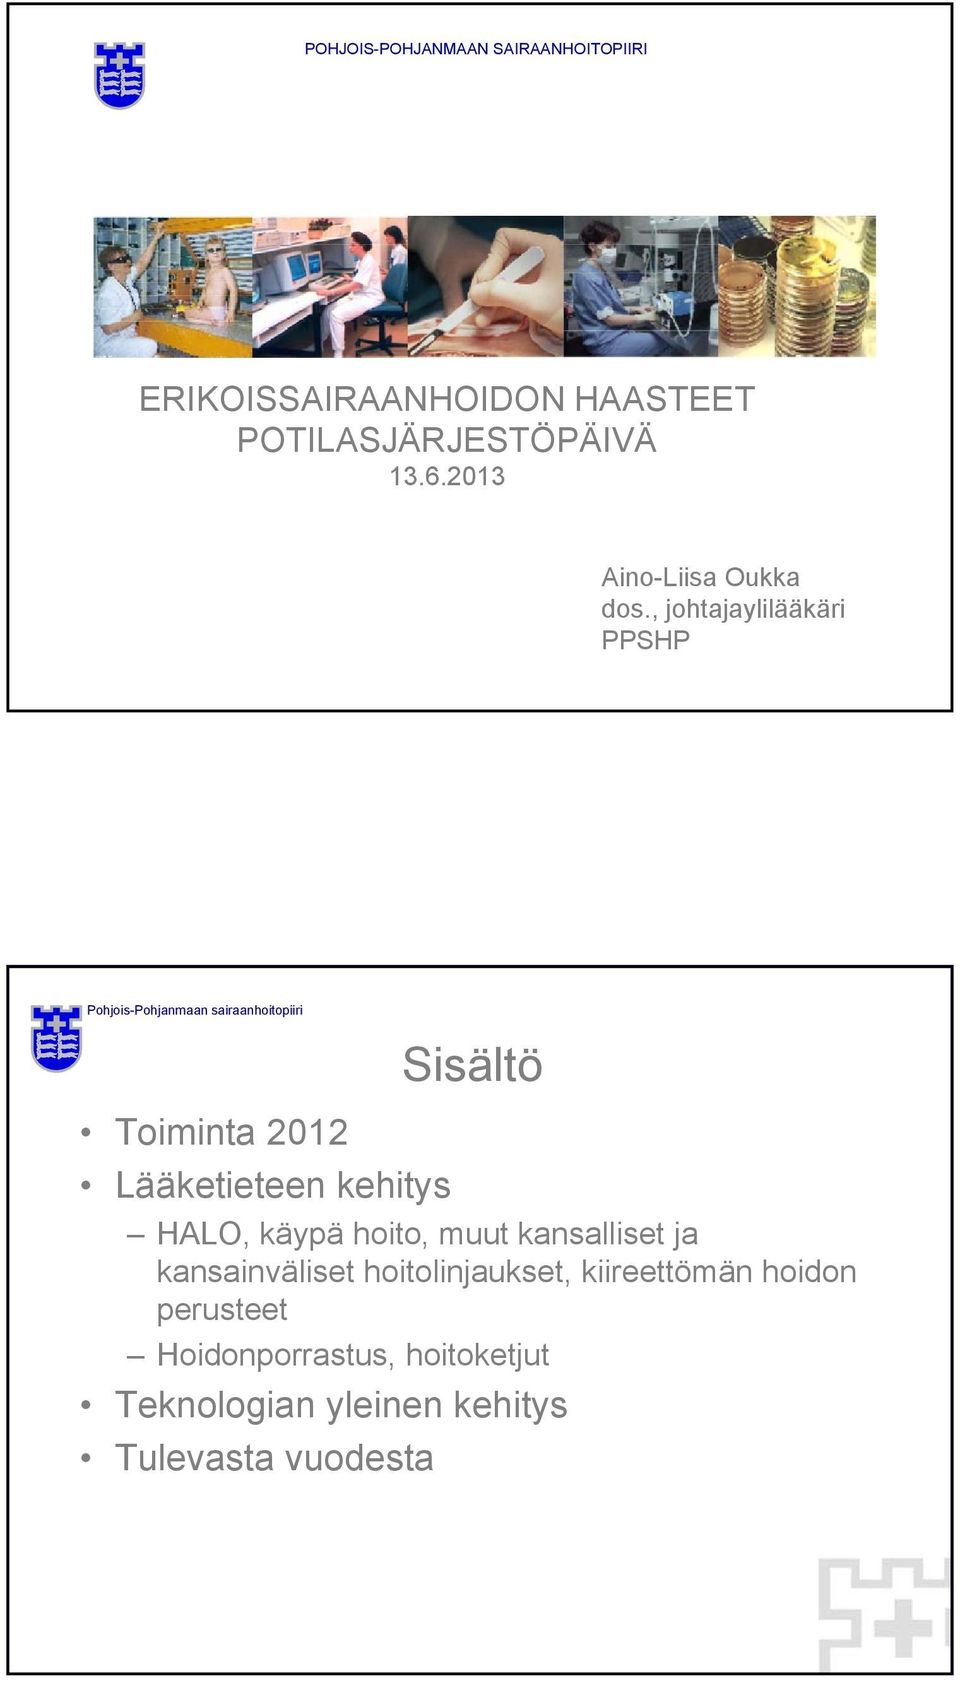 , johtajaylilääkäri PPSHP Sisältö Toiminta 2012 Lääketieteen kehitys HALO, käypä